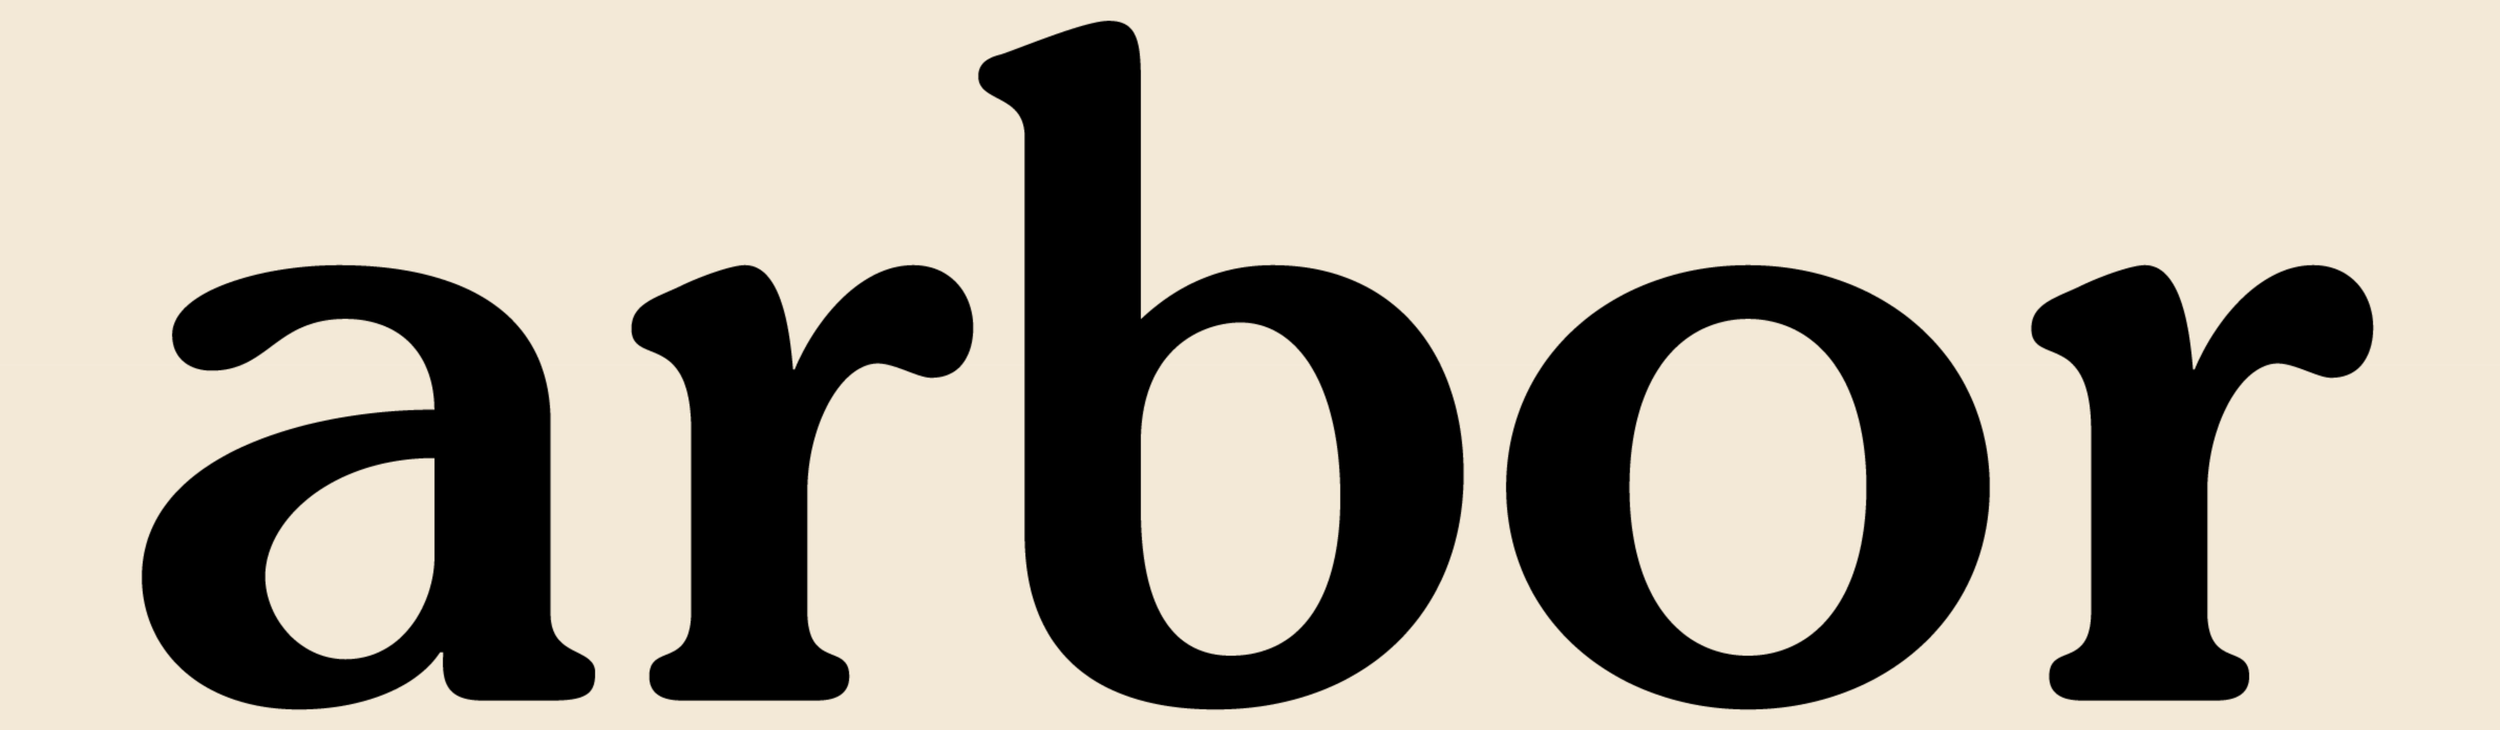 Arbor Brand Wordmark - Black on Gold - Large.png